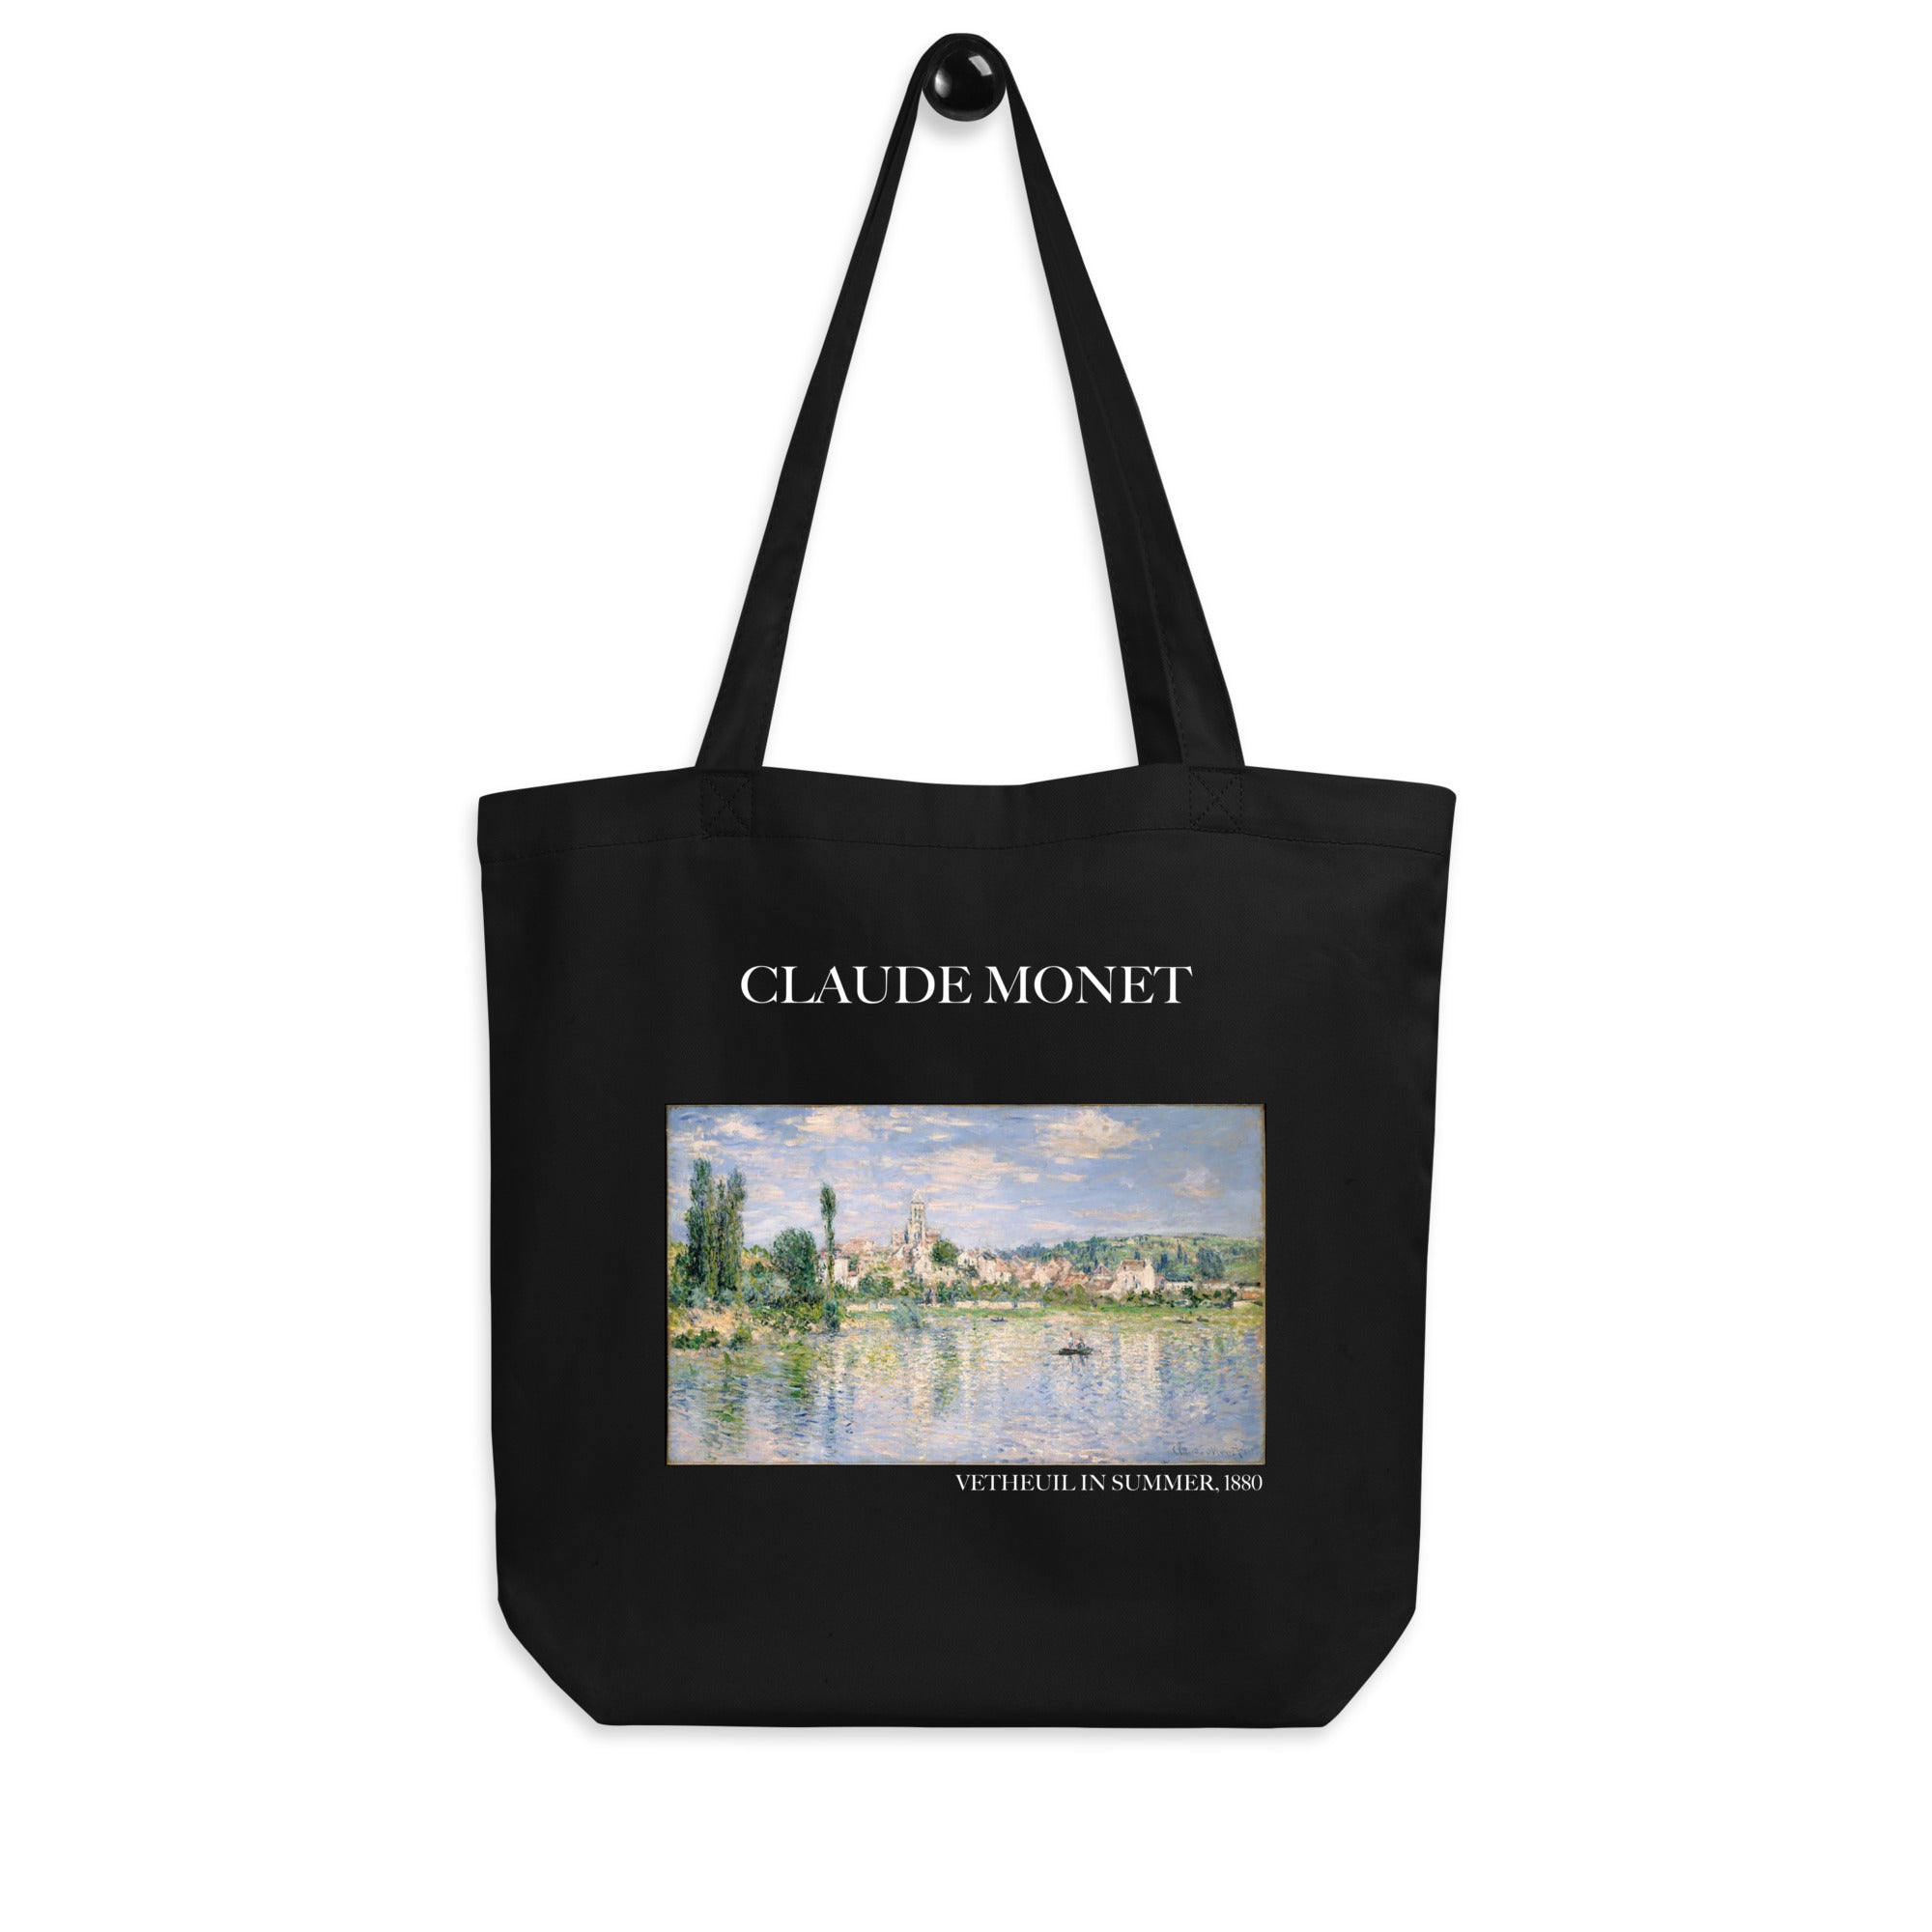 Claude Monet 'Vetheuil im Sommer' berühmtes Gemälde Tragetasche | Umweltfreundliche Kunst Tragetasche